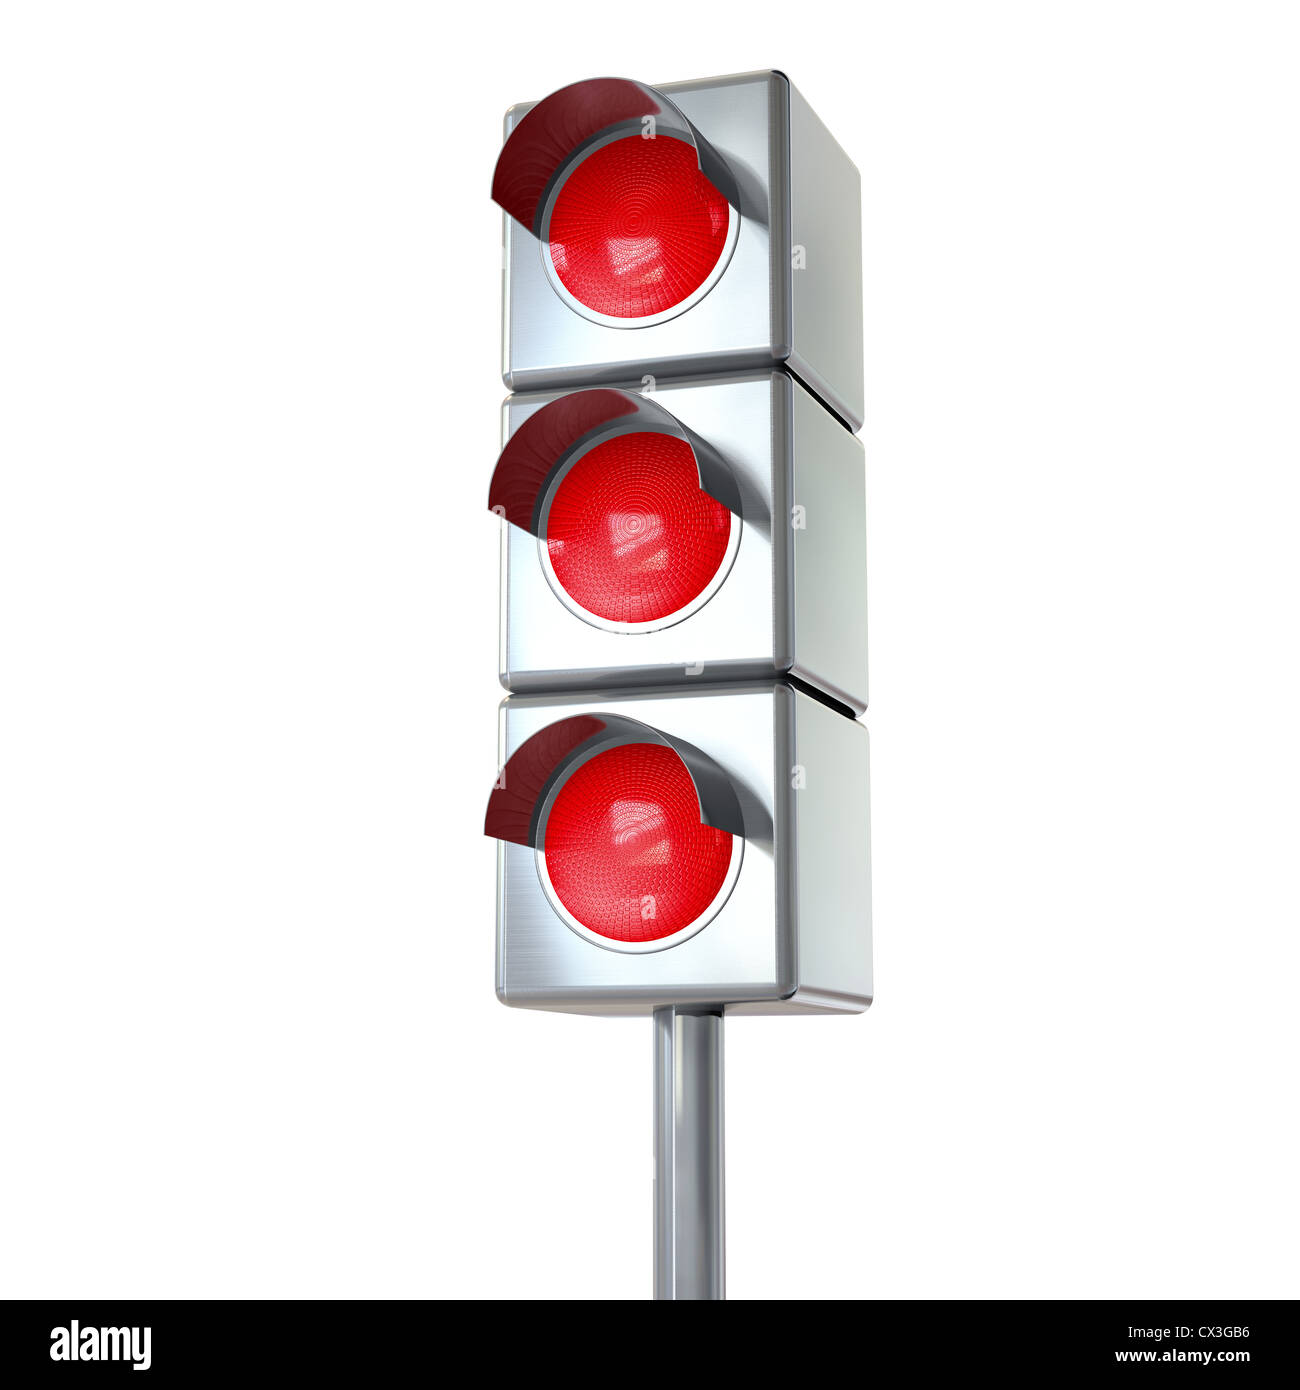 Nachberufliche Mit 3 Roten Lichtern - Treffic Licht mit 3 rote Lichter auf weißem Hintergrund Stockfoto